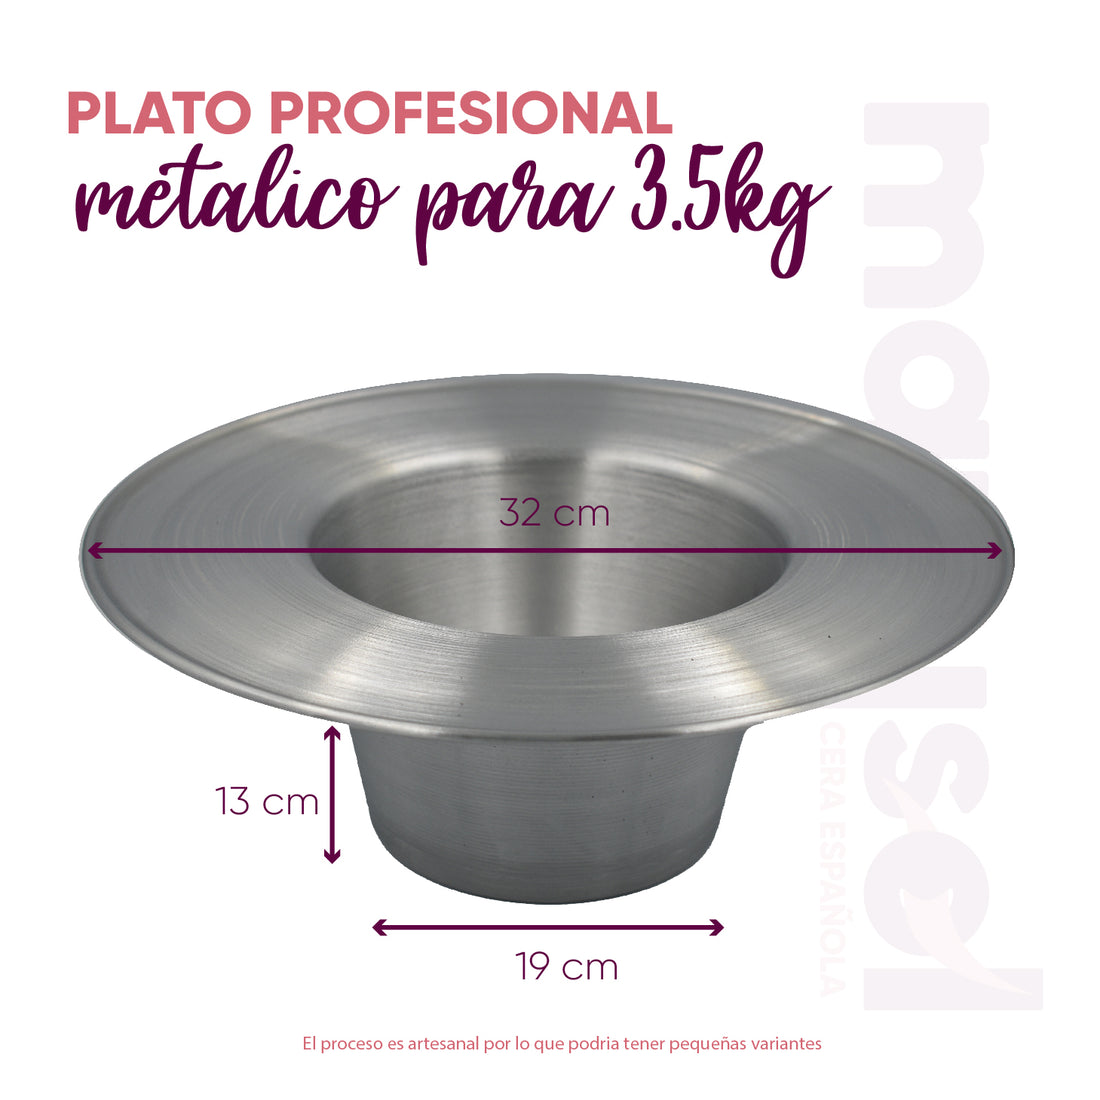 Plato profesional metalico para depilación 3.5kg de cera española